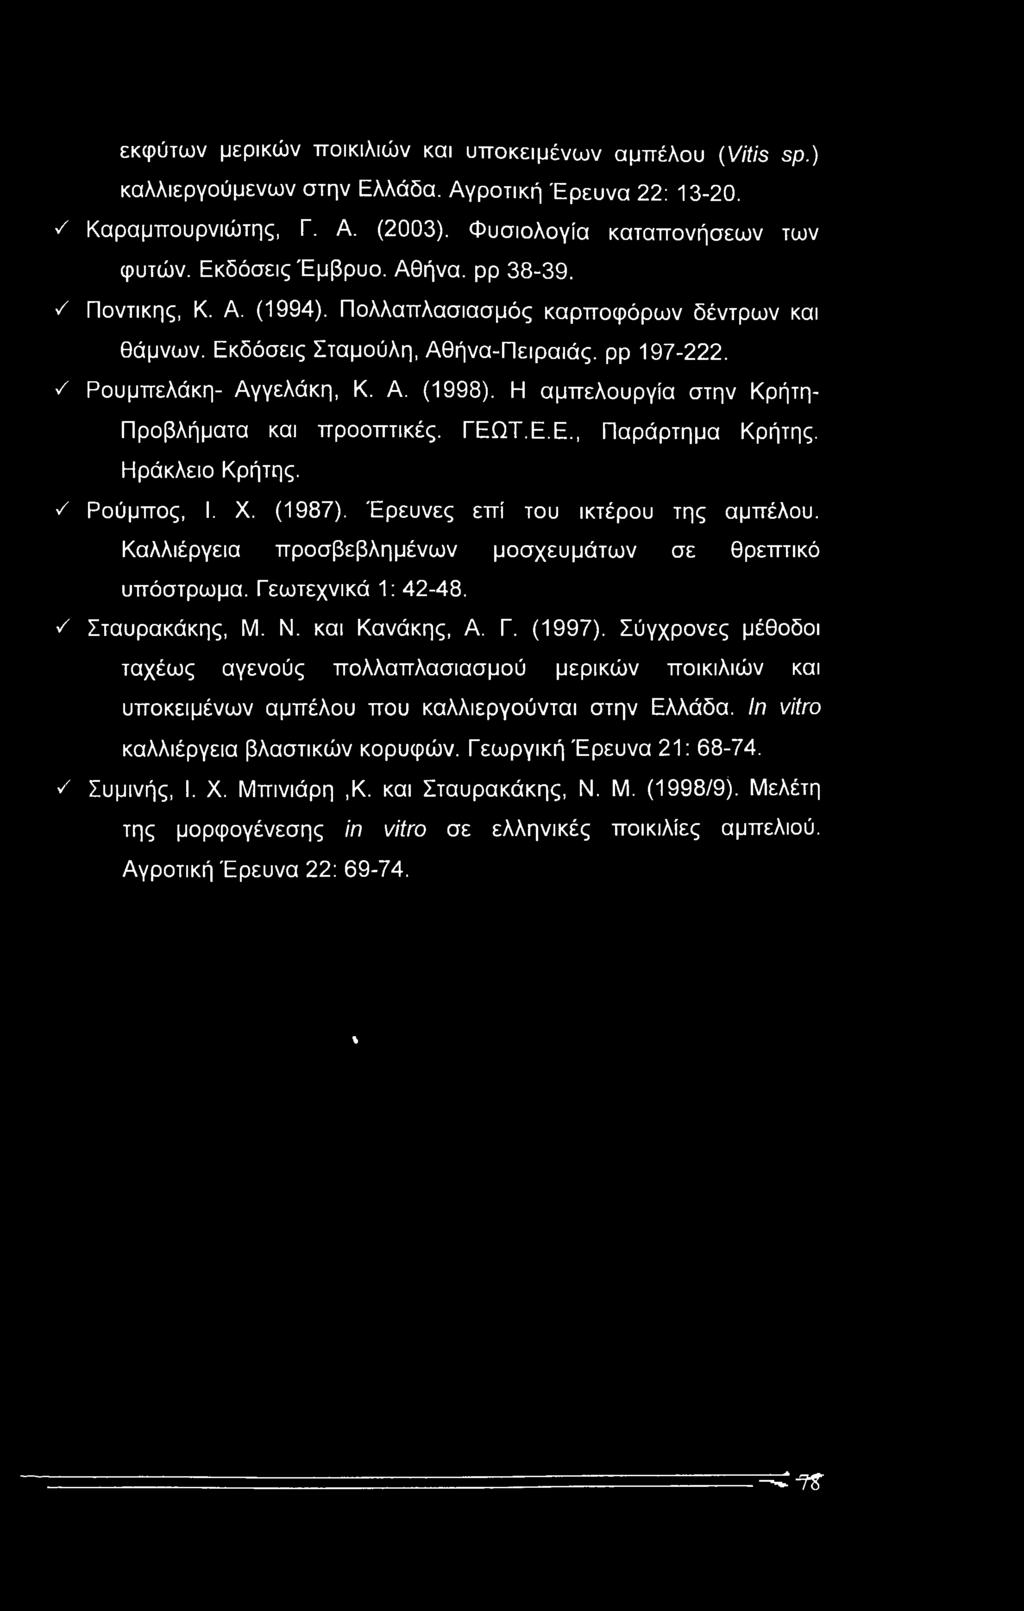 Η αμπελουργία στην Κρήτη- Προβλήματα και προοπτικές. ΓΕΩΤ.Ε.Ε., Παράρτημα Κρήτης. Ηράκλειο Κρήτης. ν' Ρούμπος, I. X. (1987). Έρευνες επί του ικτέρου της αμπέλου.